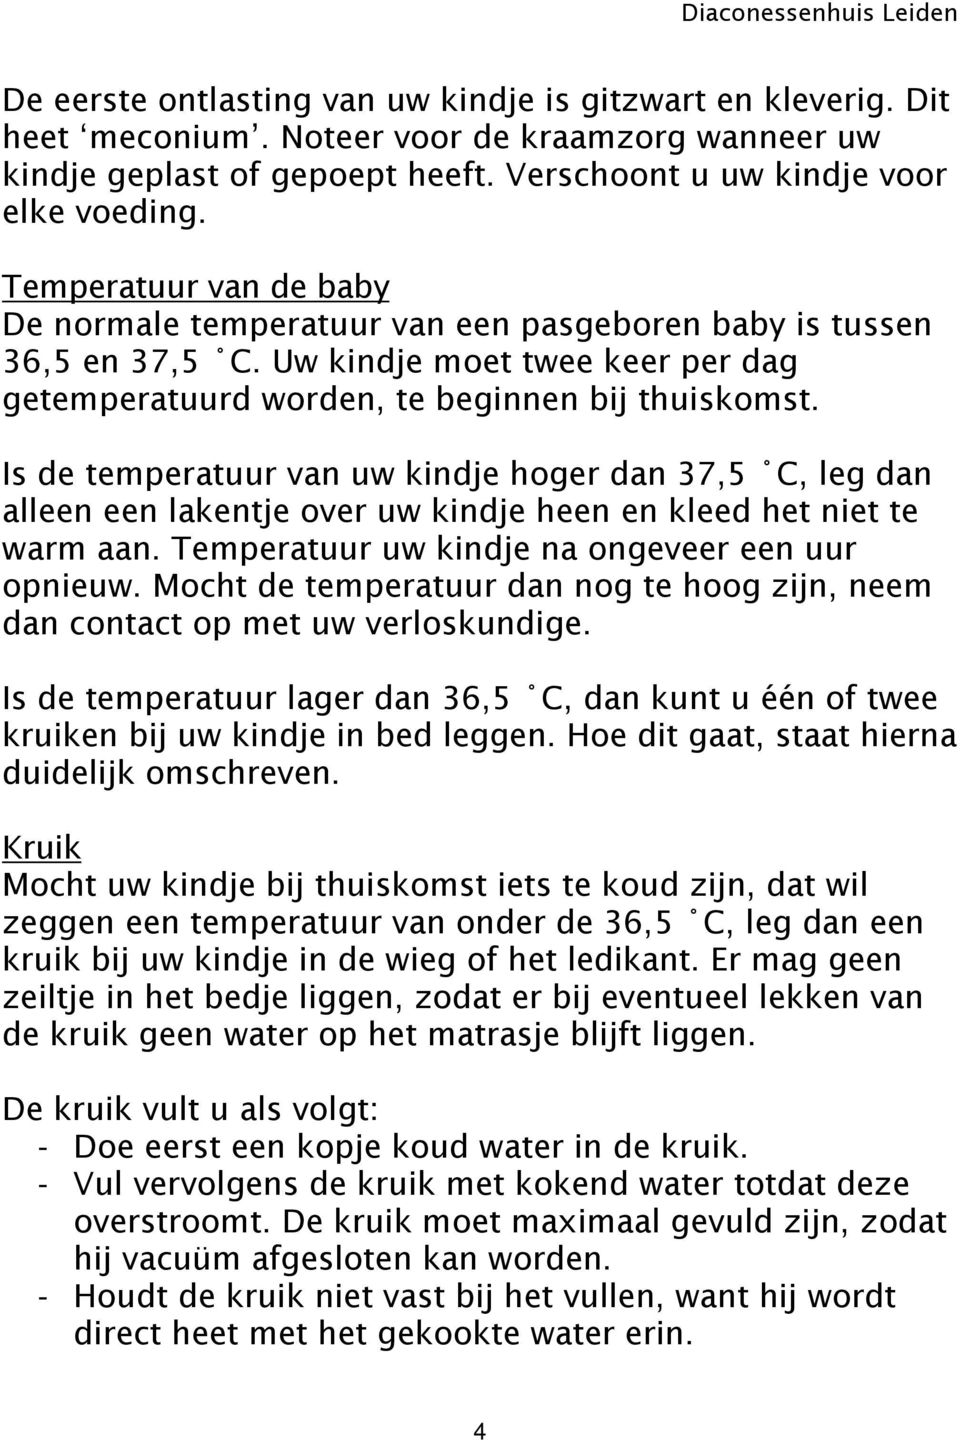 Is de temperatuur van uw kindje hoger dan 37,5 C, leg dan alleen een lakentje over uw kindje heen en kleed het niet te warm aan. Temperatuur uw kindje na ongeveer een uur opnieuw.